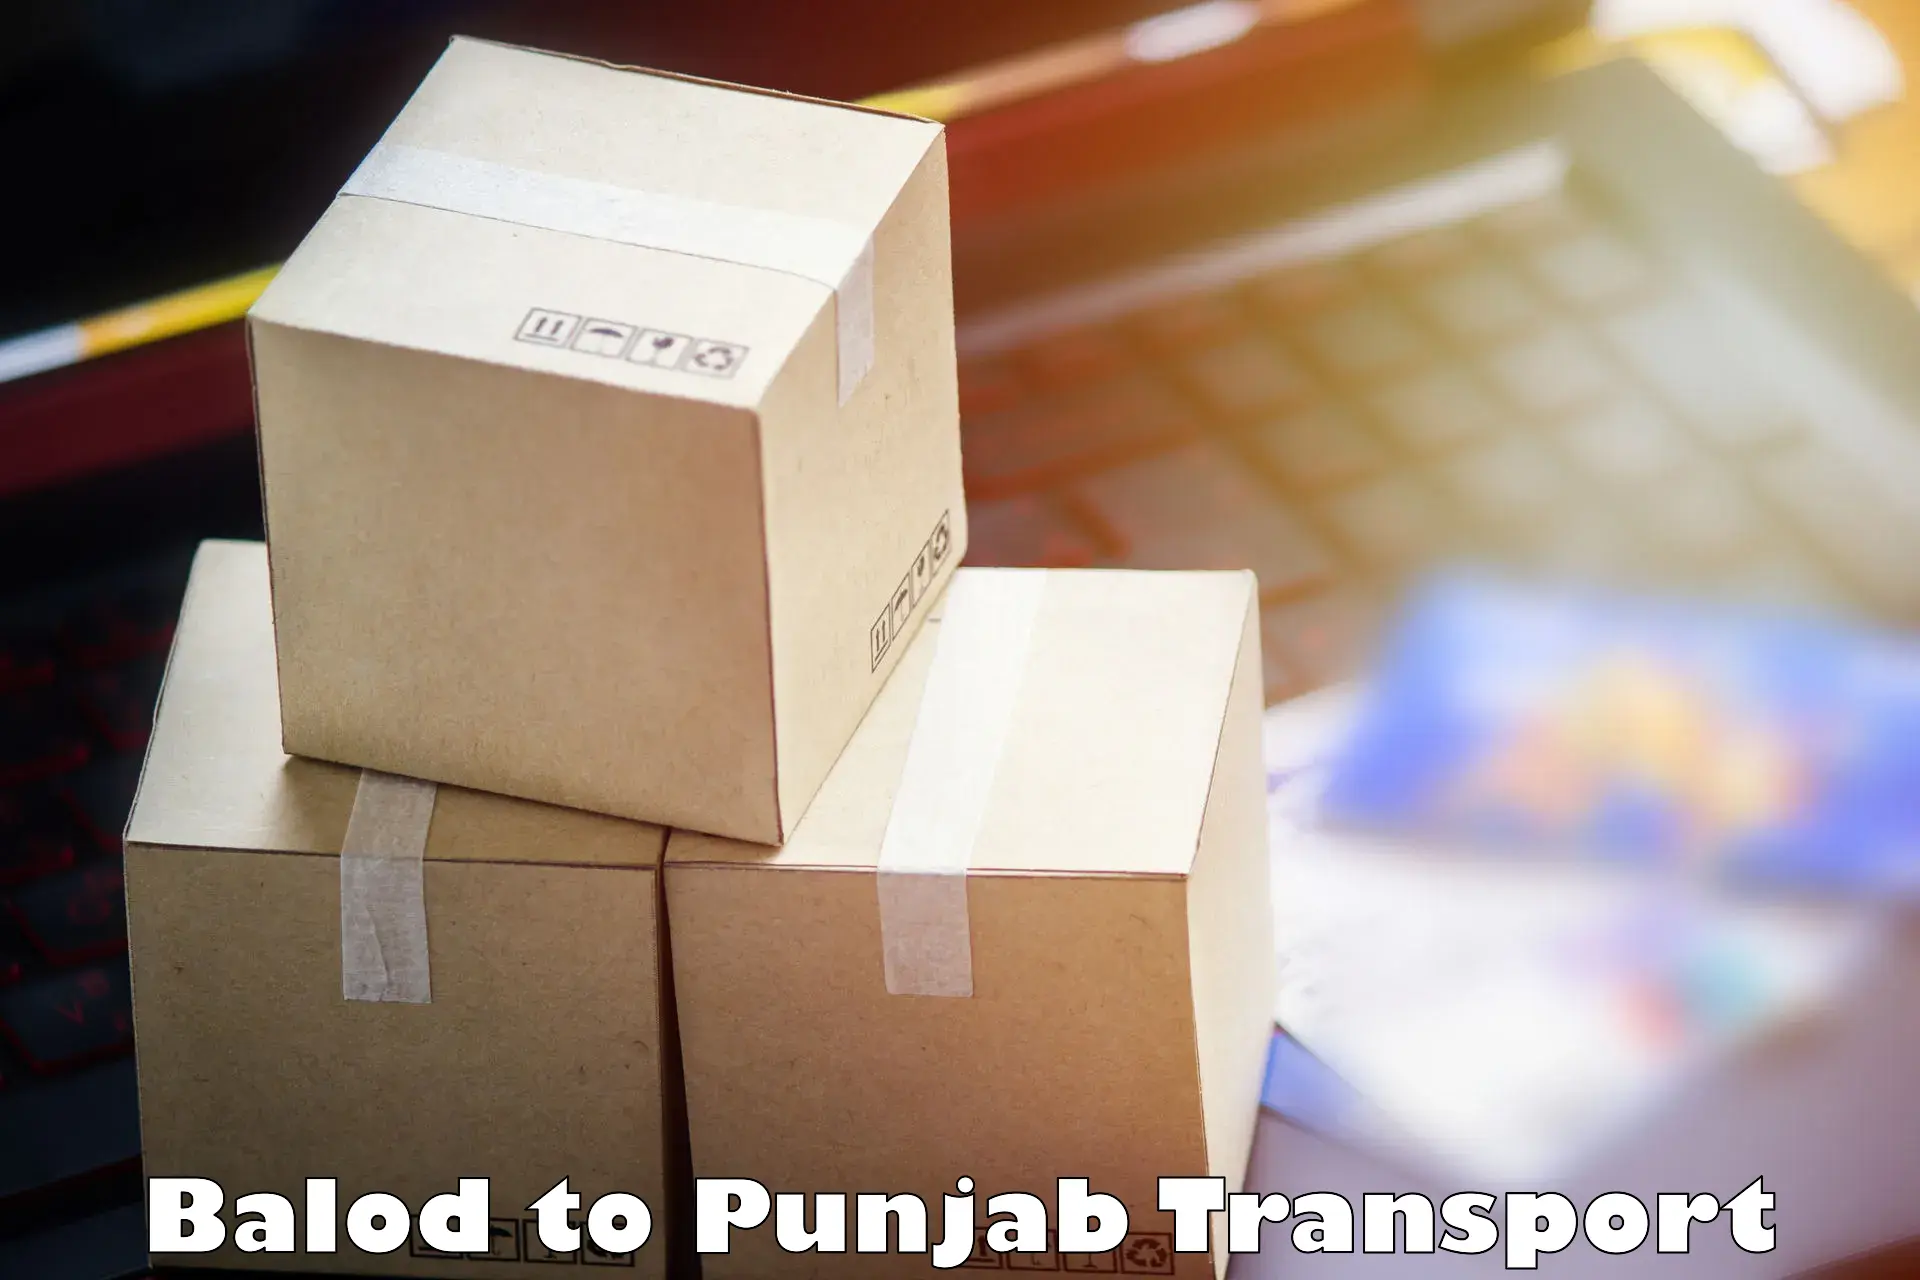 Part load transport service in India Balod to Jalandhar